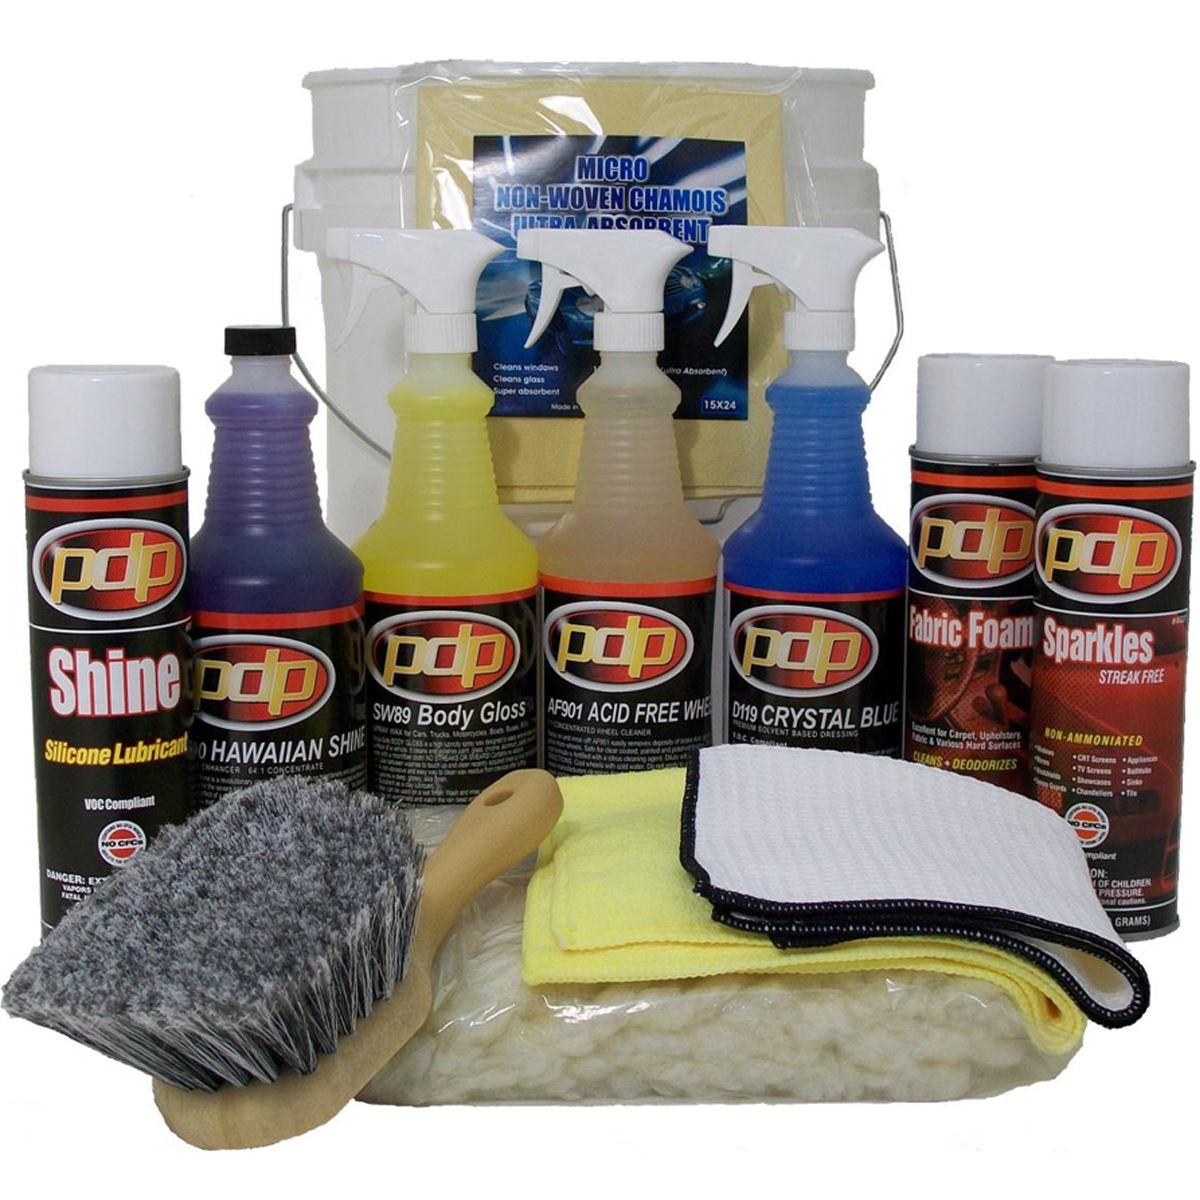 Car Cleaning Kits & Detailing Kits